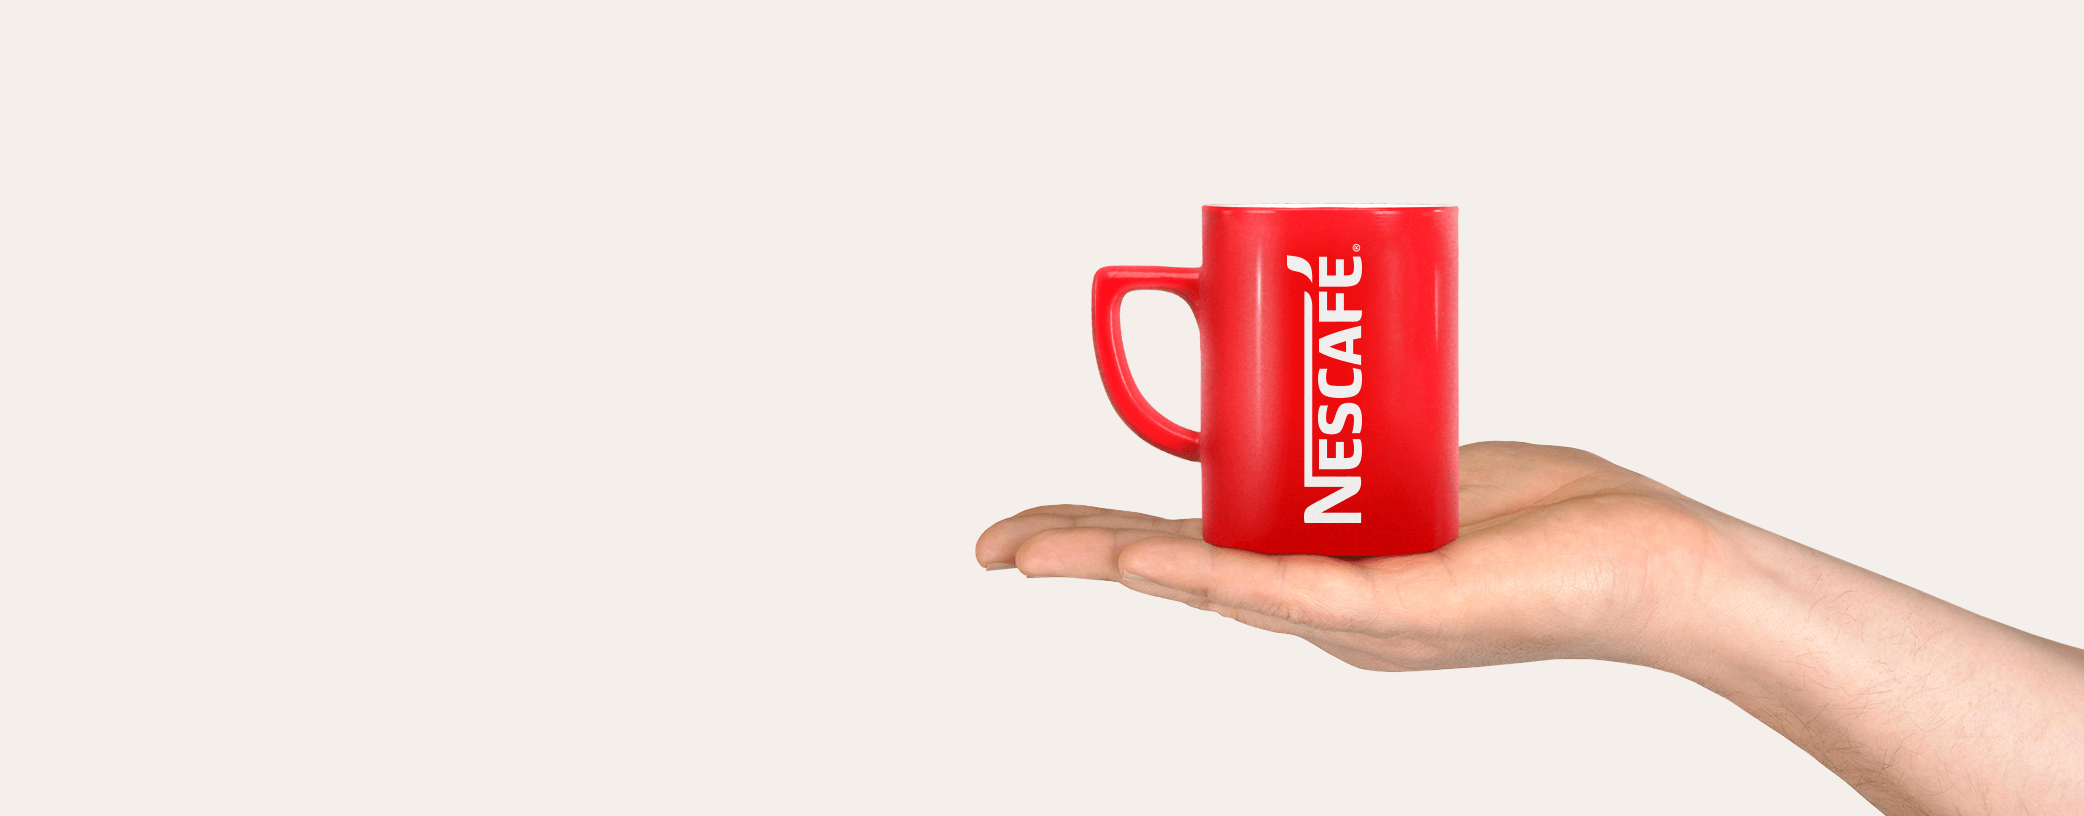 αγαπημένος καφές Nescafe